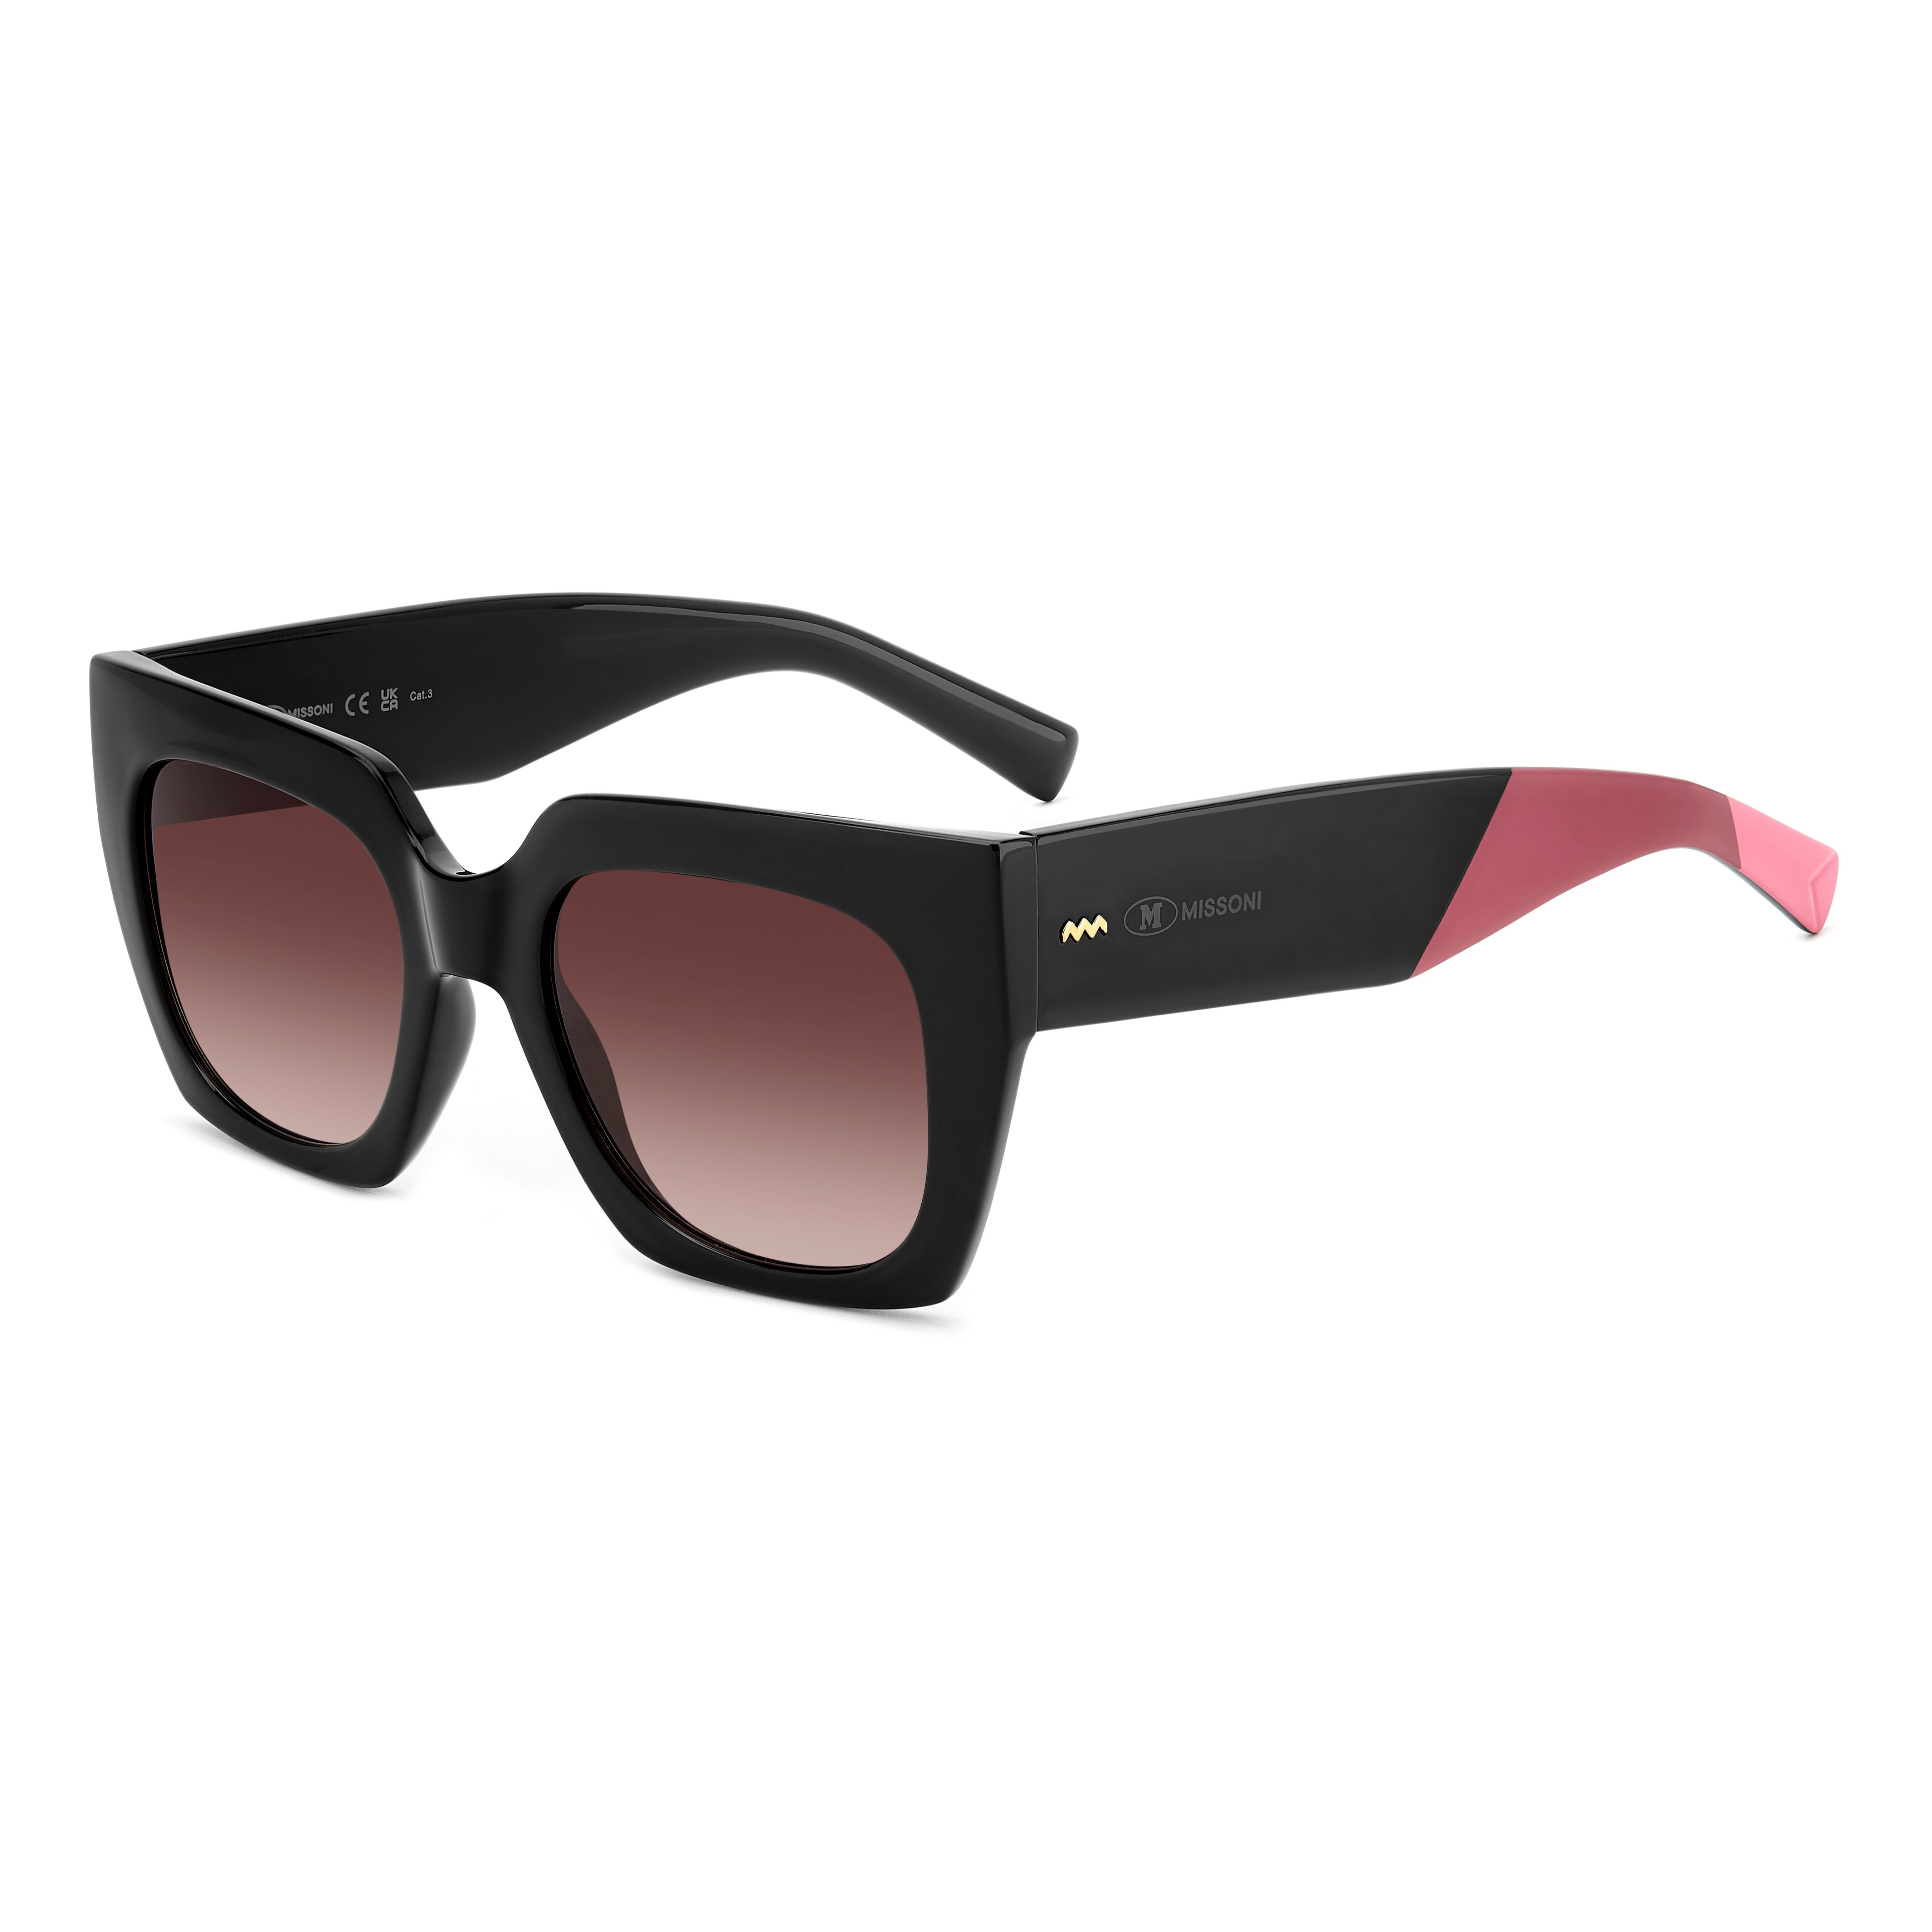 MMI 0168 S Square Sunglasses 8073X - size 51